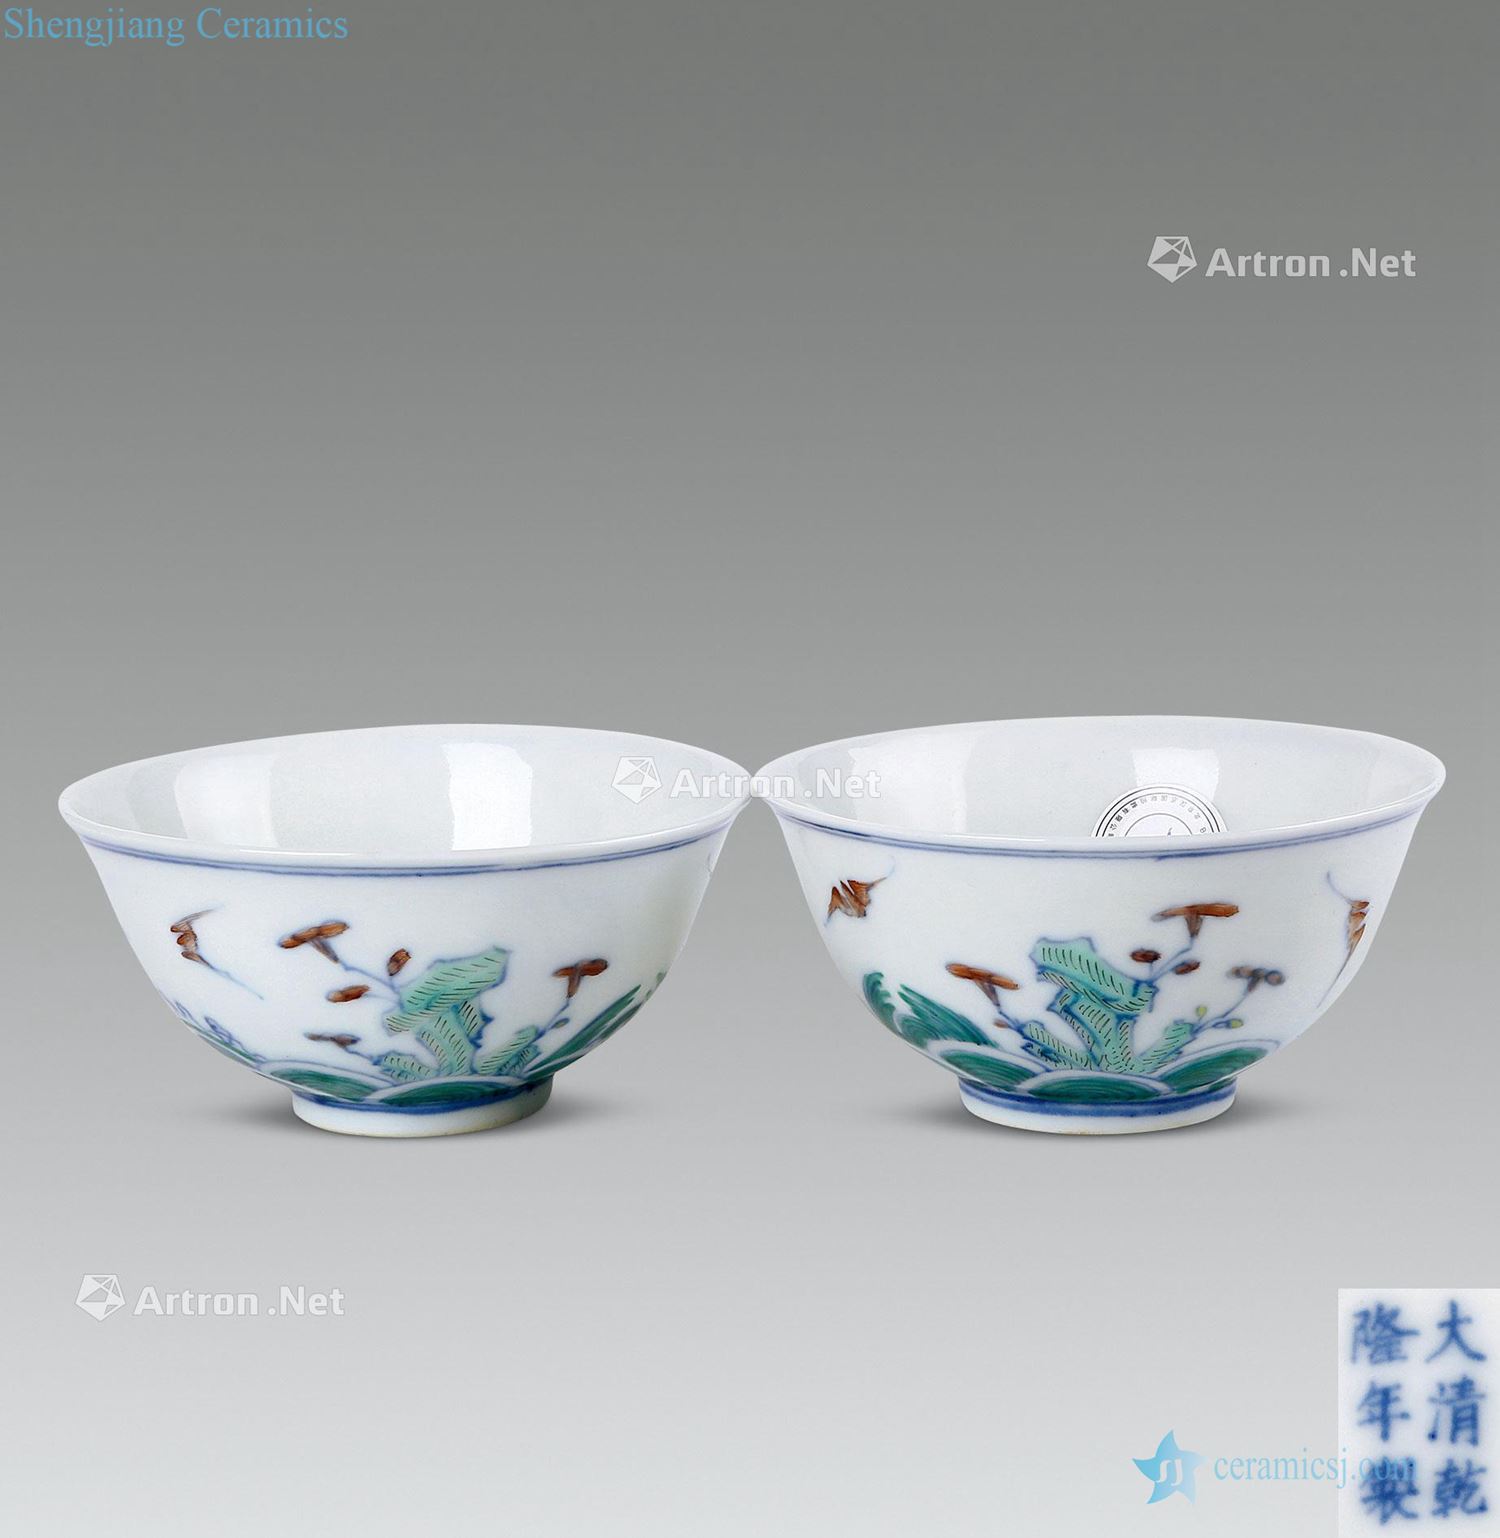 Qianlong bucket color carp jump longmen decorative glass (a)